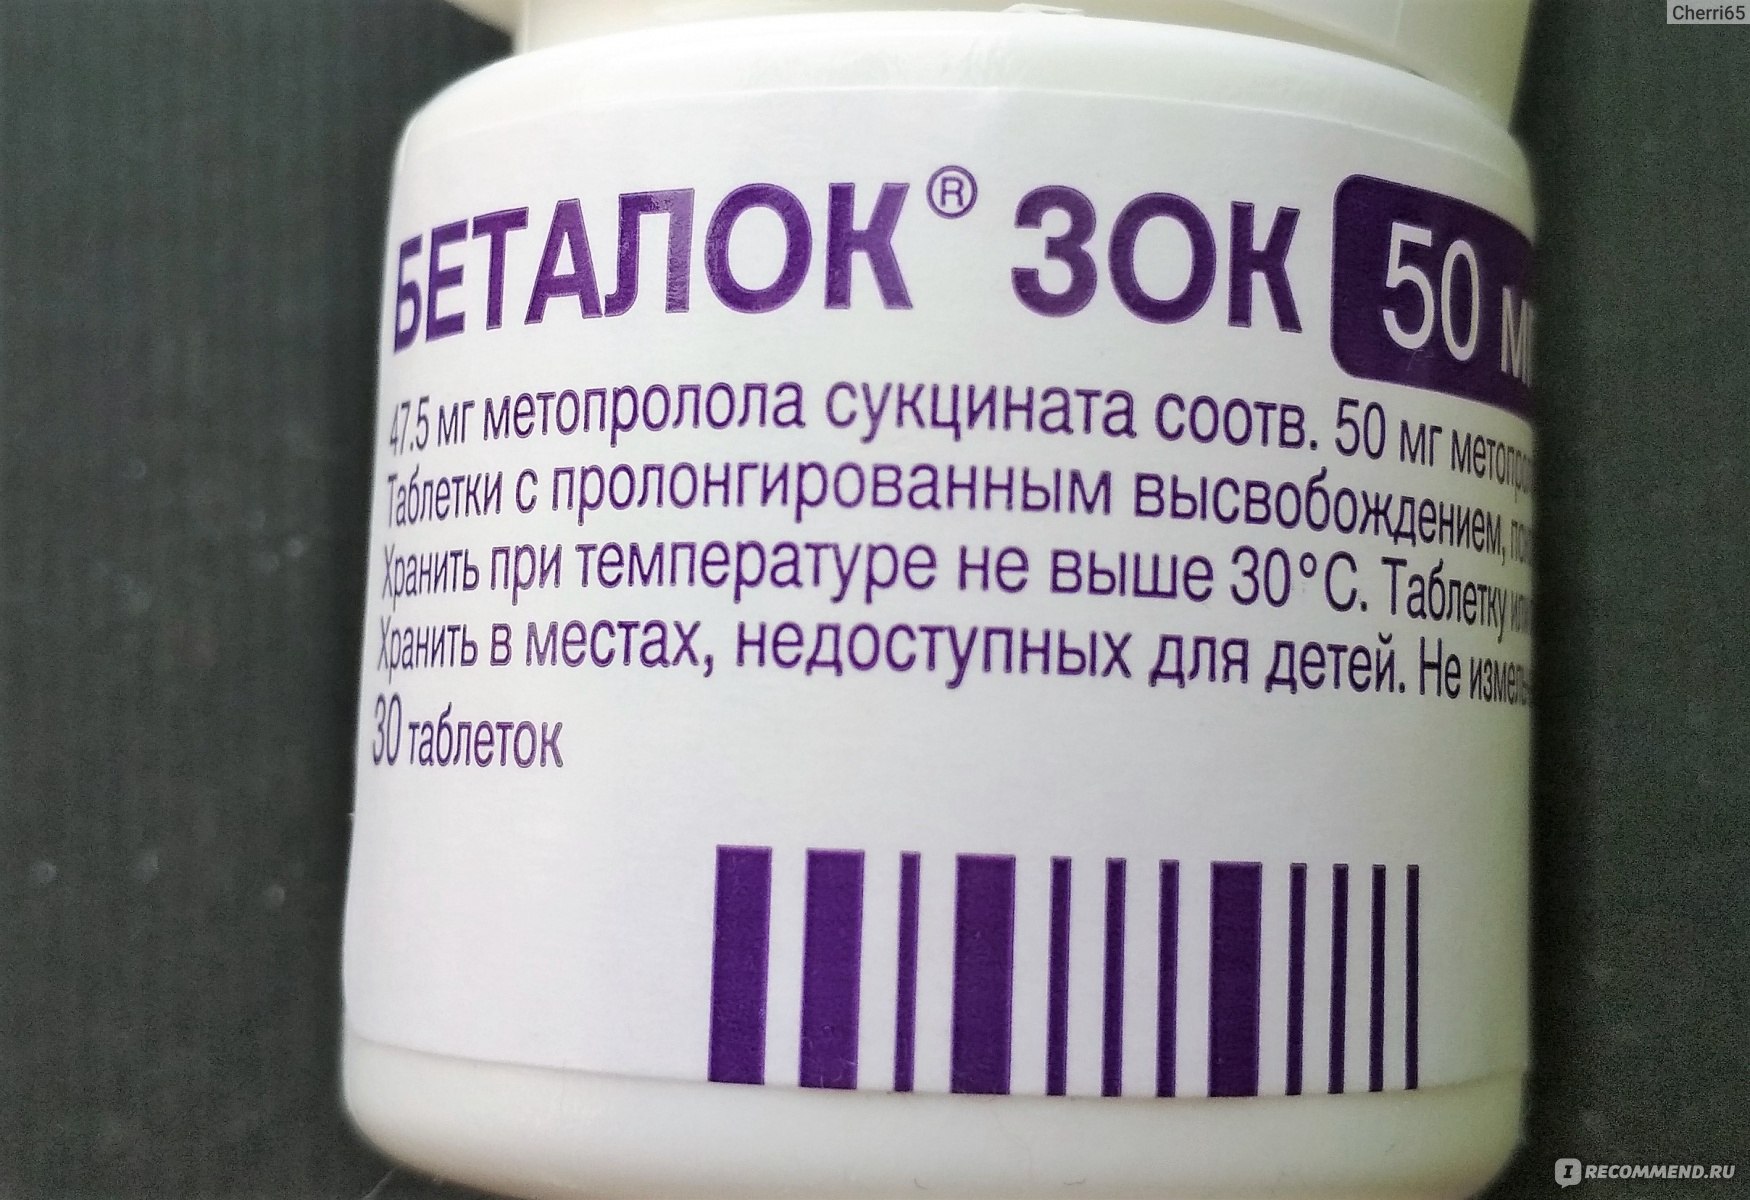 Таблетки AstraZeneca Беталок Зок - «Успокаивает сердцебиение, немного .